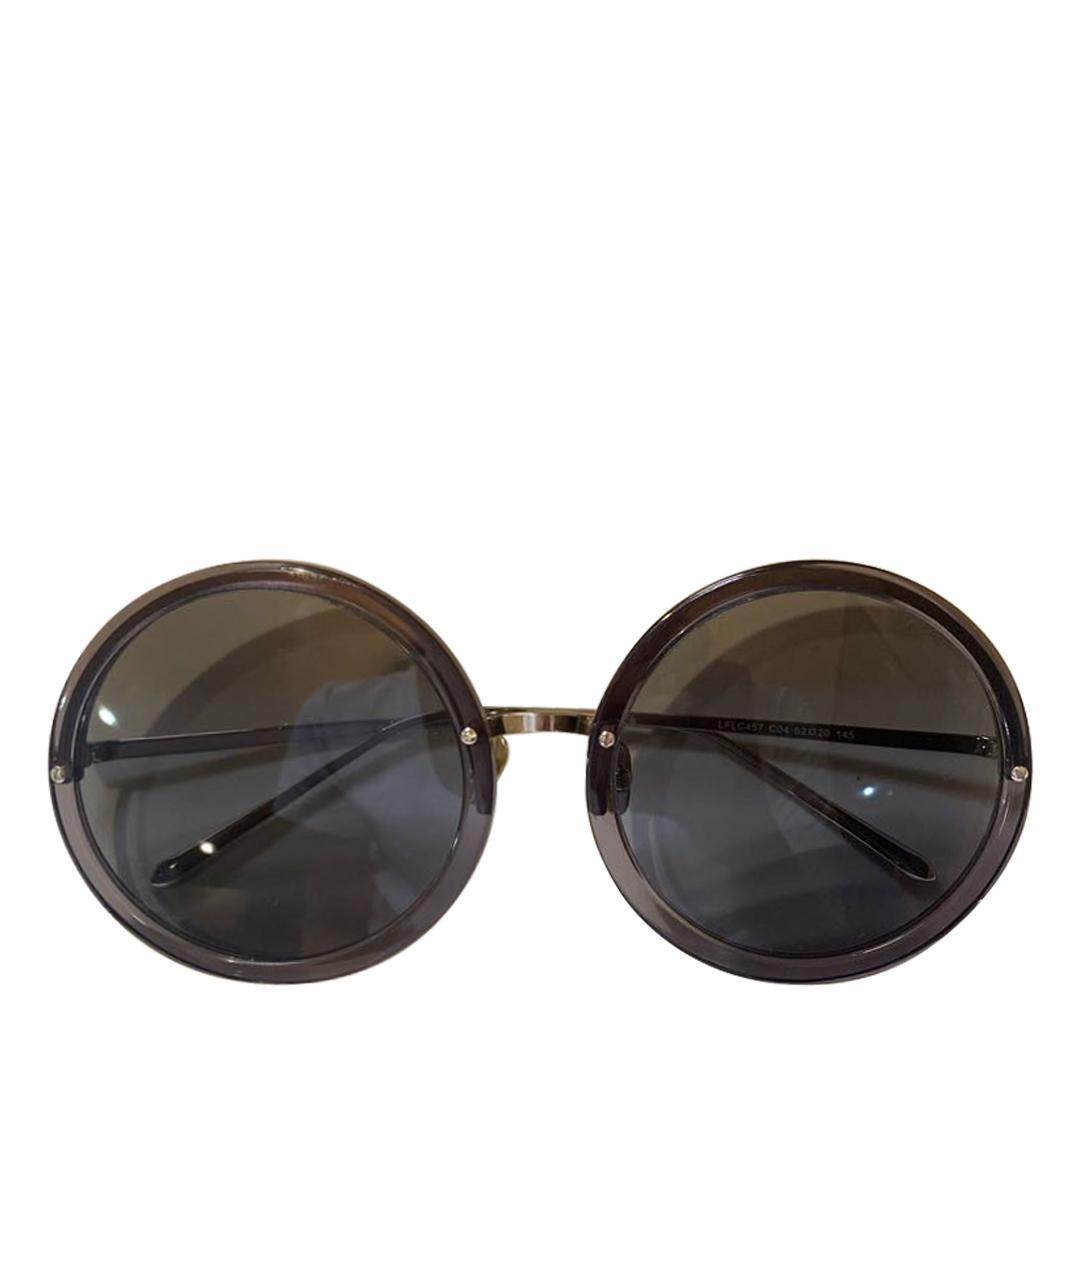 LINDA FARROW Антрацитовые солнцезащитные очки, фото 1